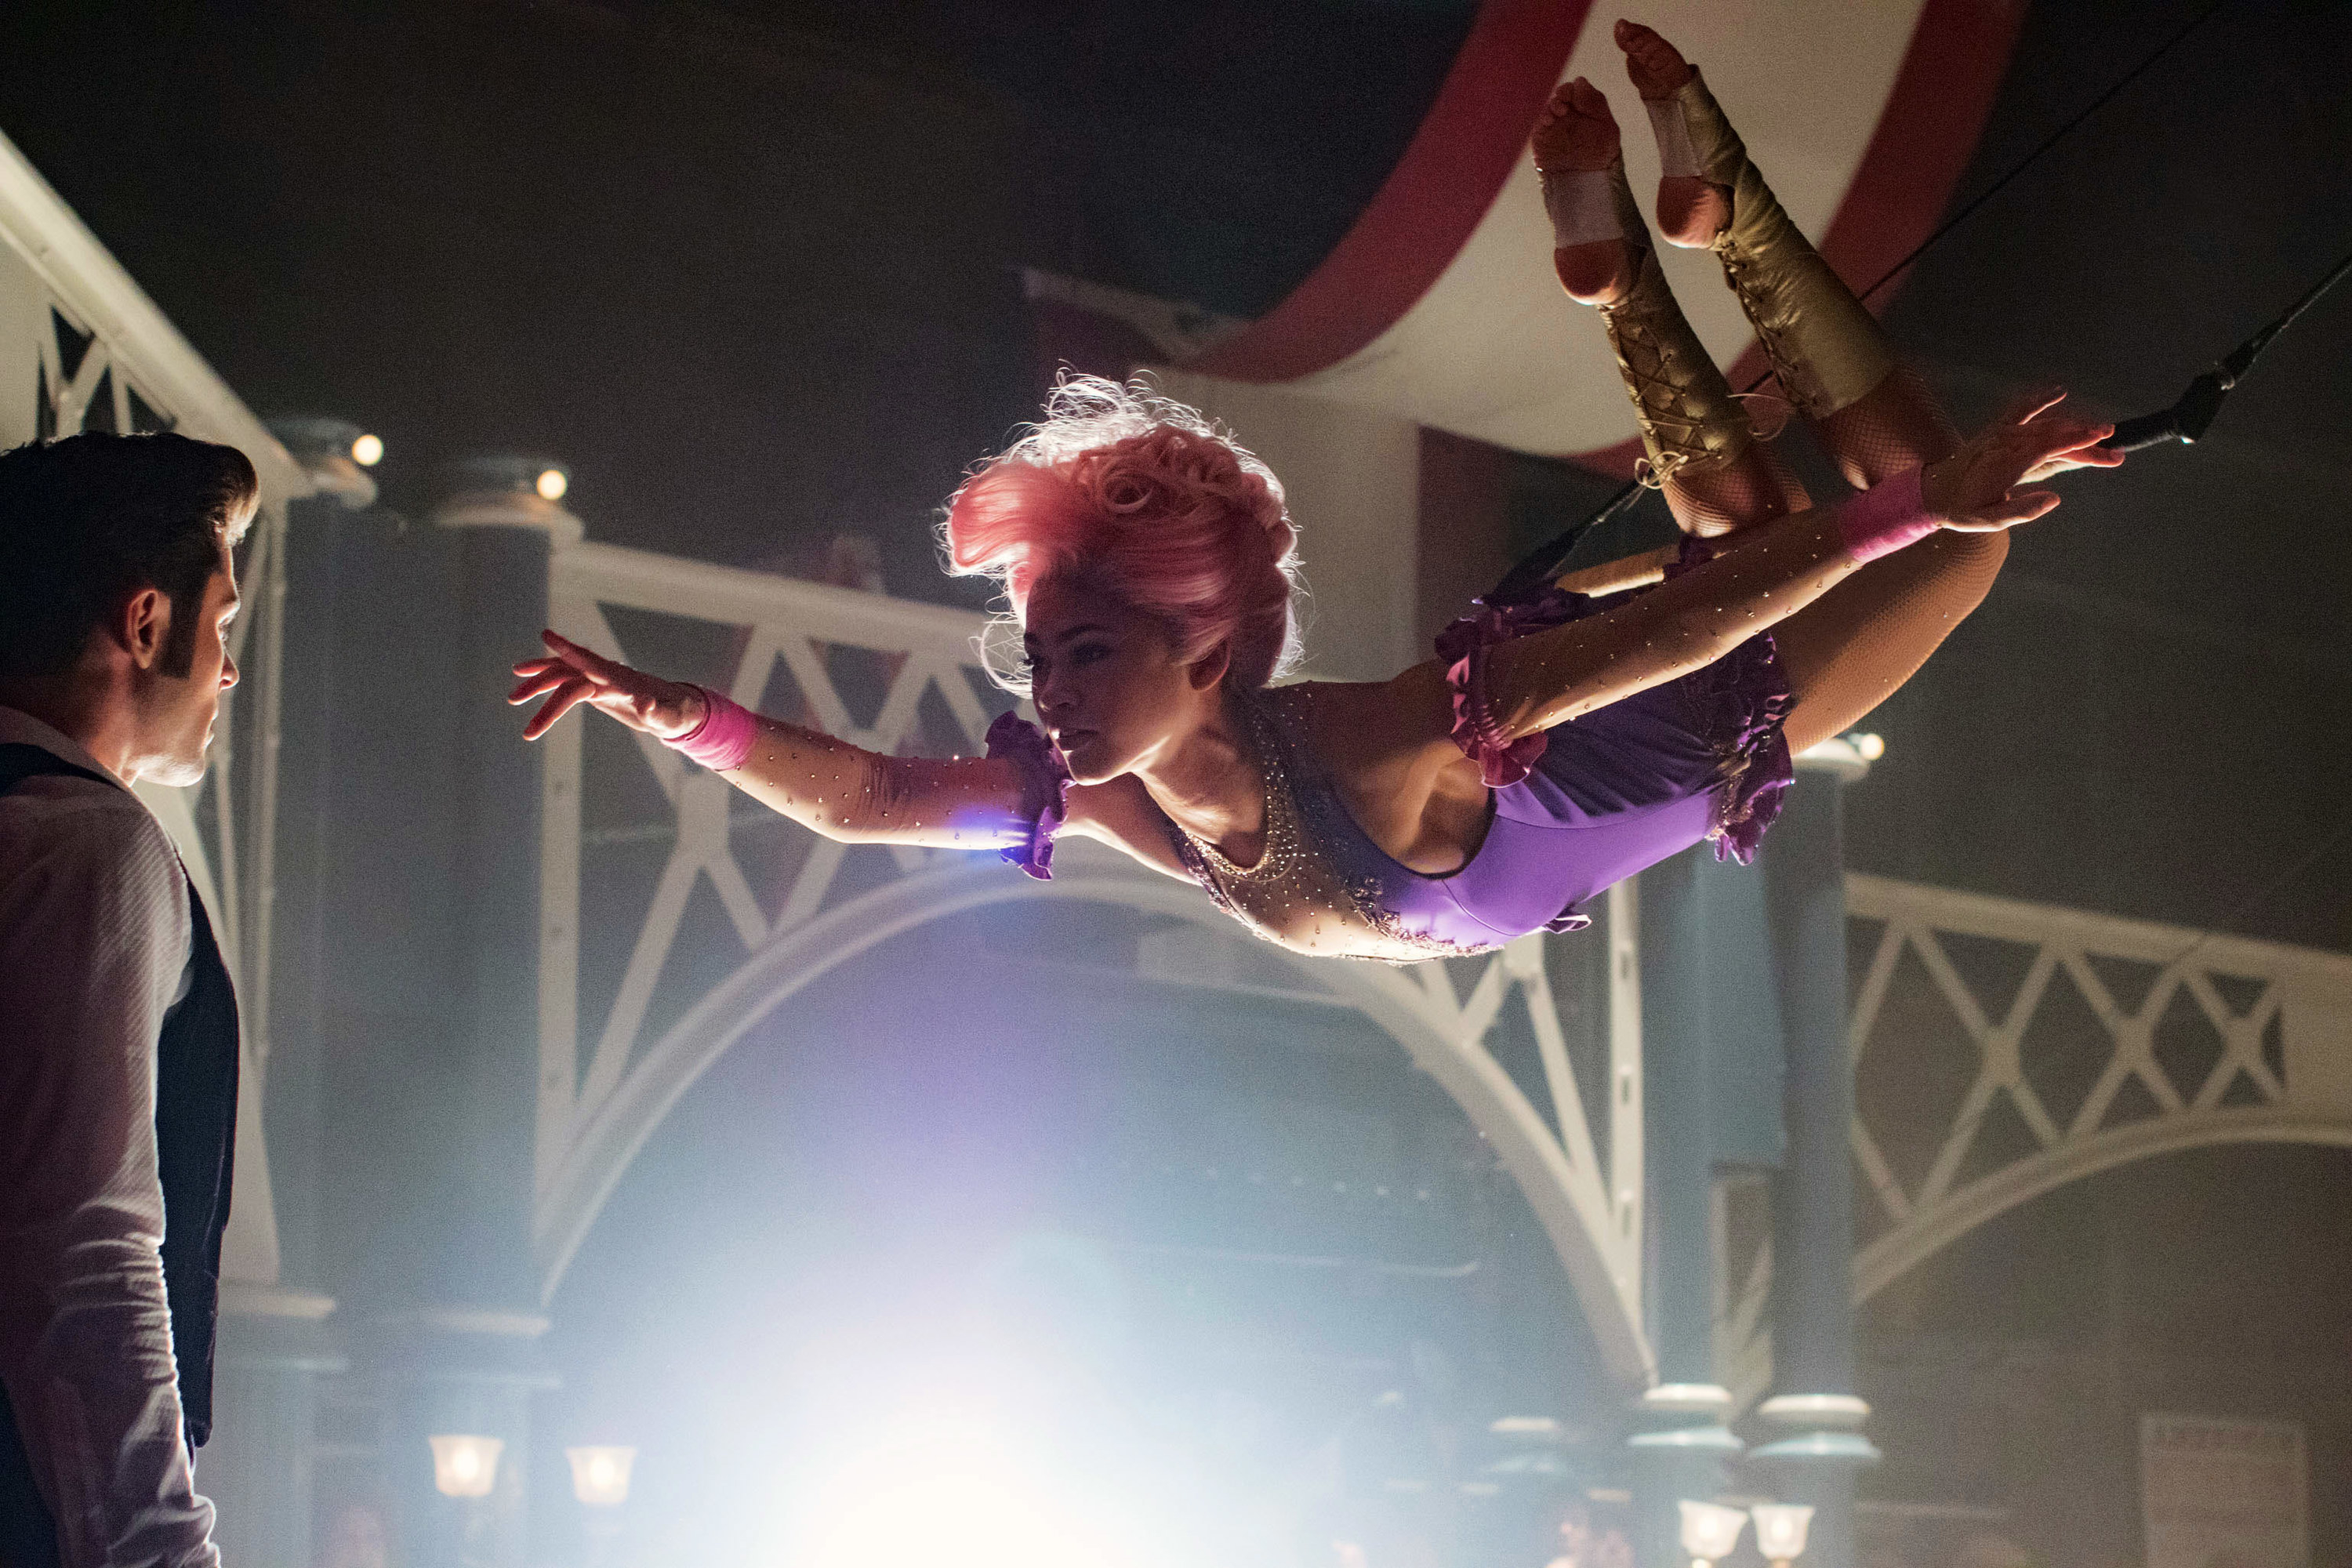 Zendaya as an acrobat in the circus